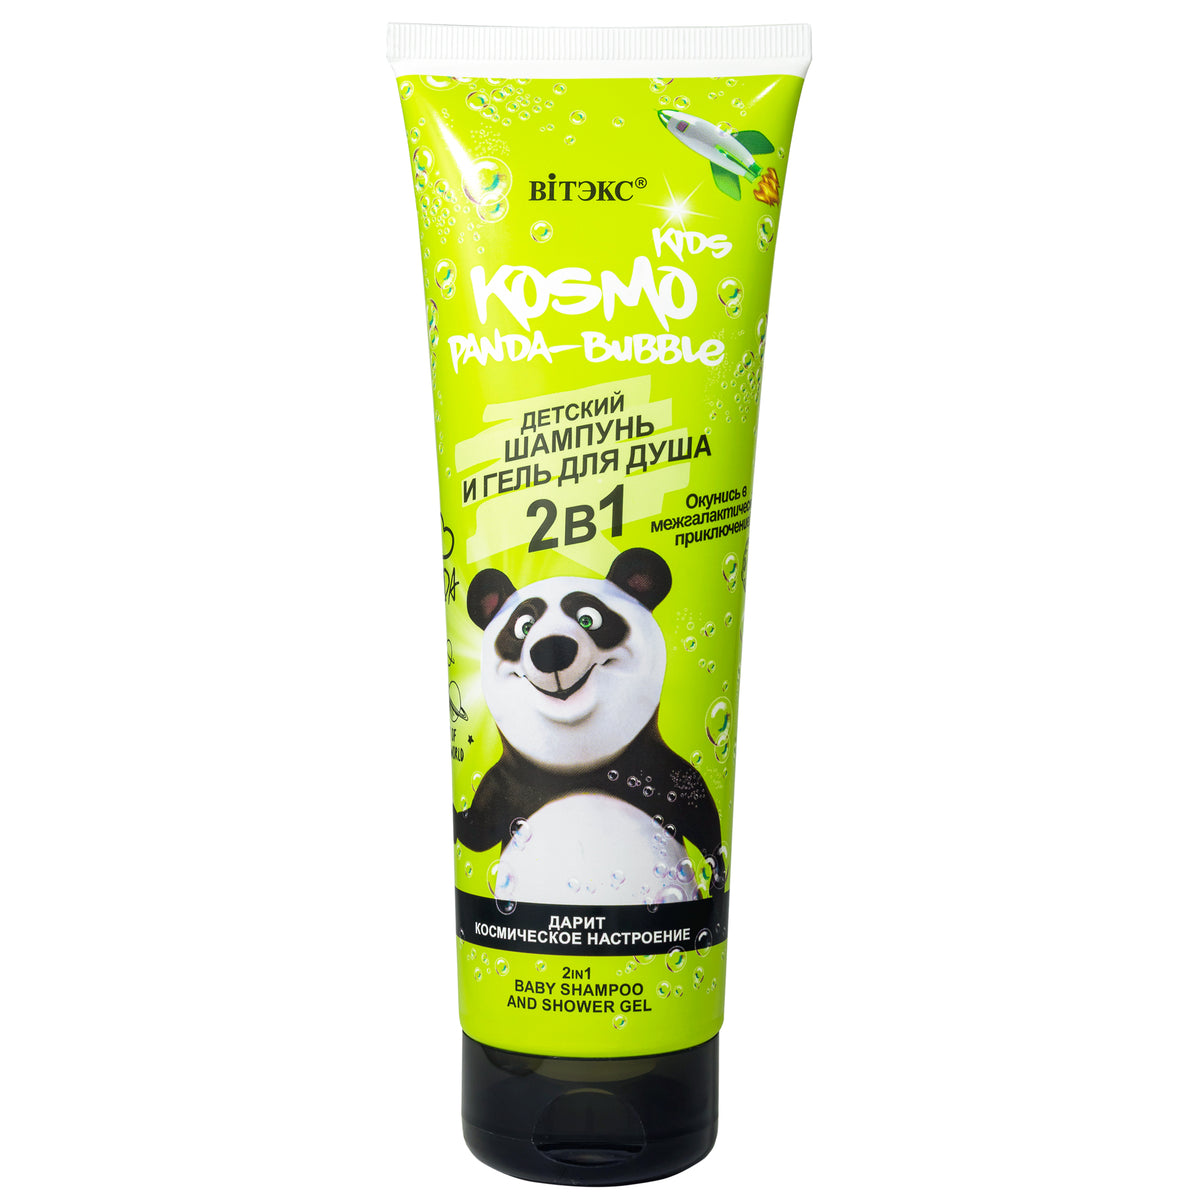 Kosmo Kids PANDA-BUBBLE 3+ Yaş Çocuk Şampuanı ve Duş Jeli 2si1 Arada (250 ml) | Auraline Cosmetics